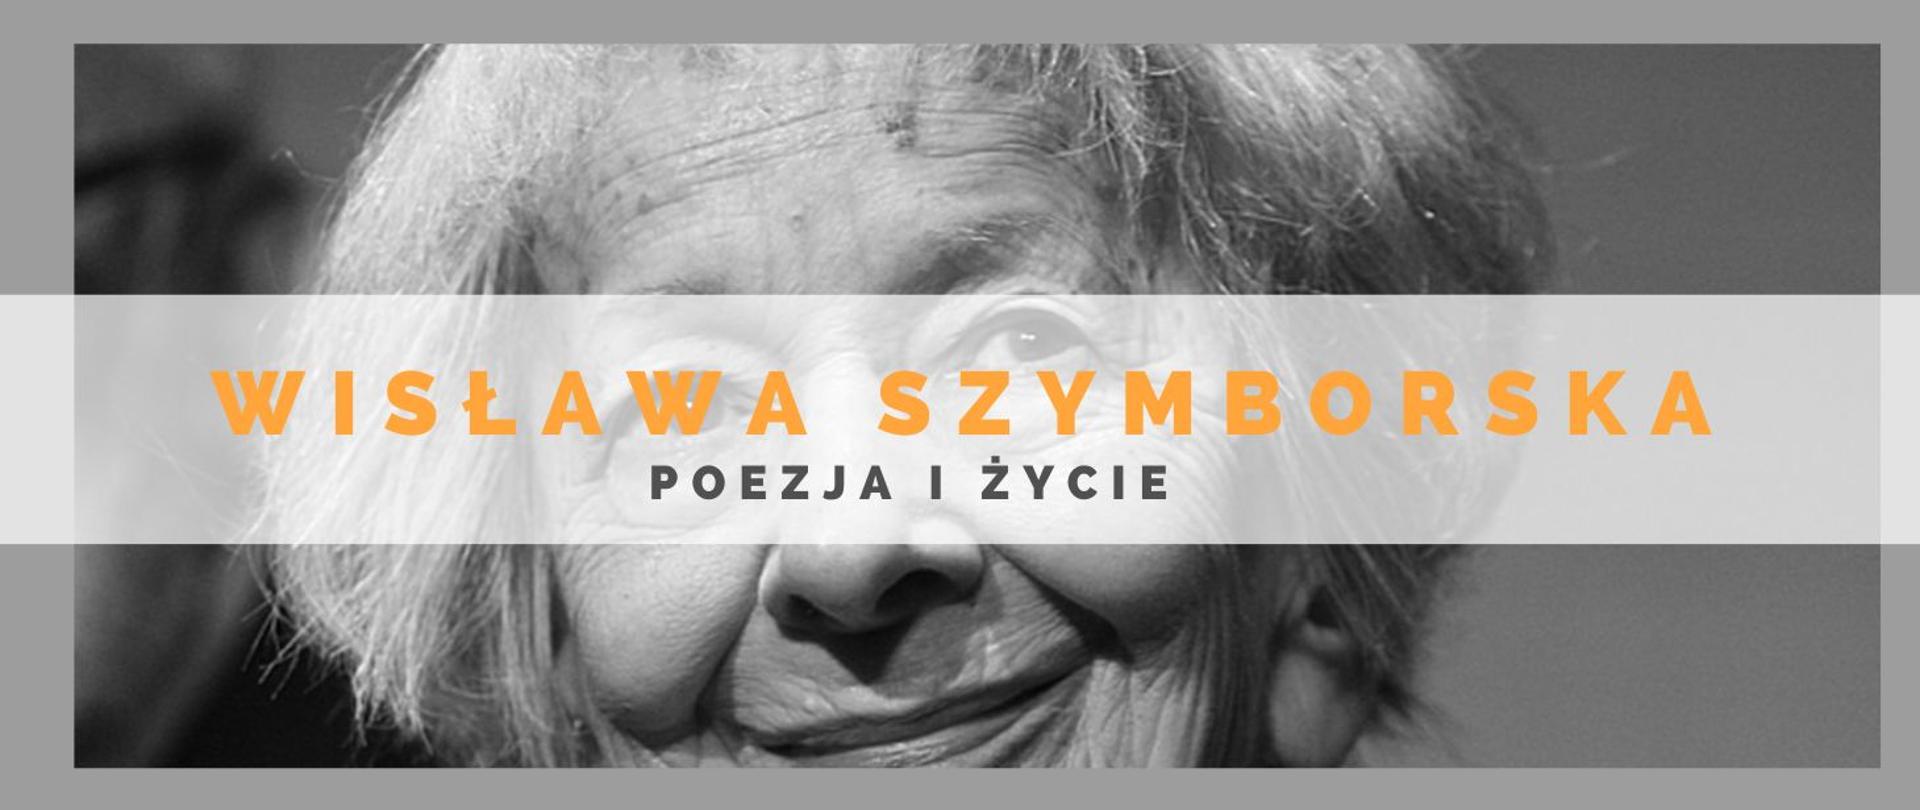 Zdjęcie czarno - białe uśmiechniętej Wisławy Szymborskiej. Na zdjęciu pomarańczowymi oraz szarymi literami Wisława Szymborska - poezja i życie.